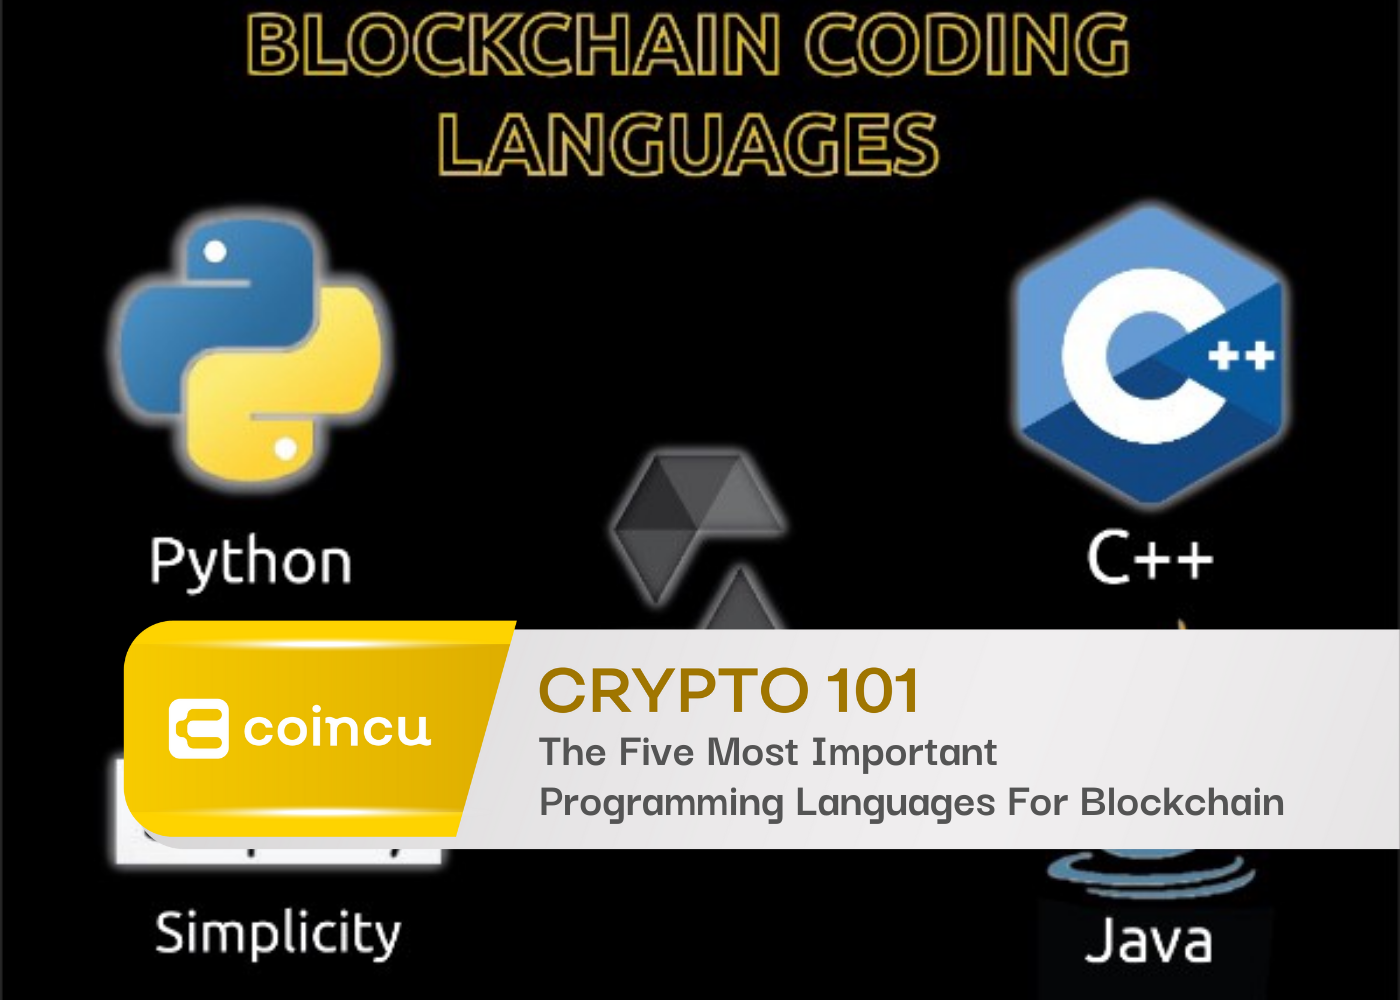 As cinco linguagens de programação mais importantes para Blockchain